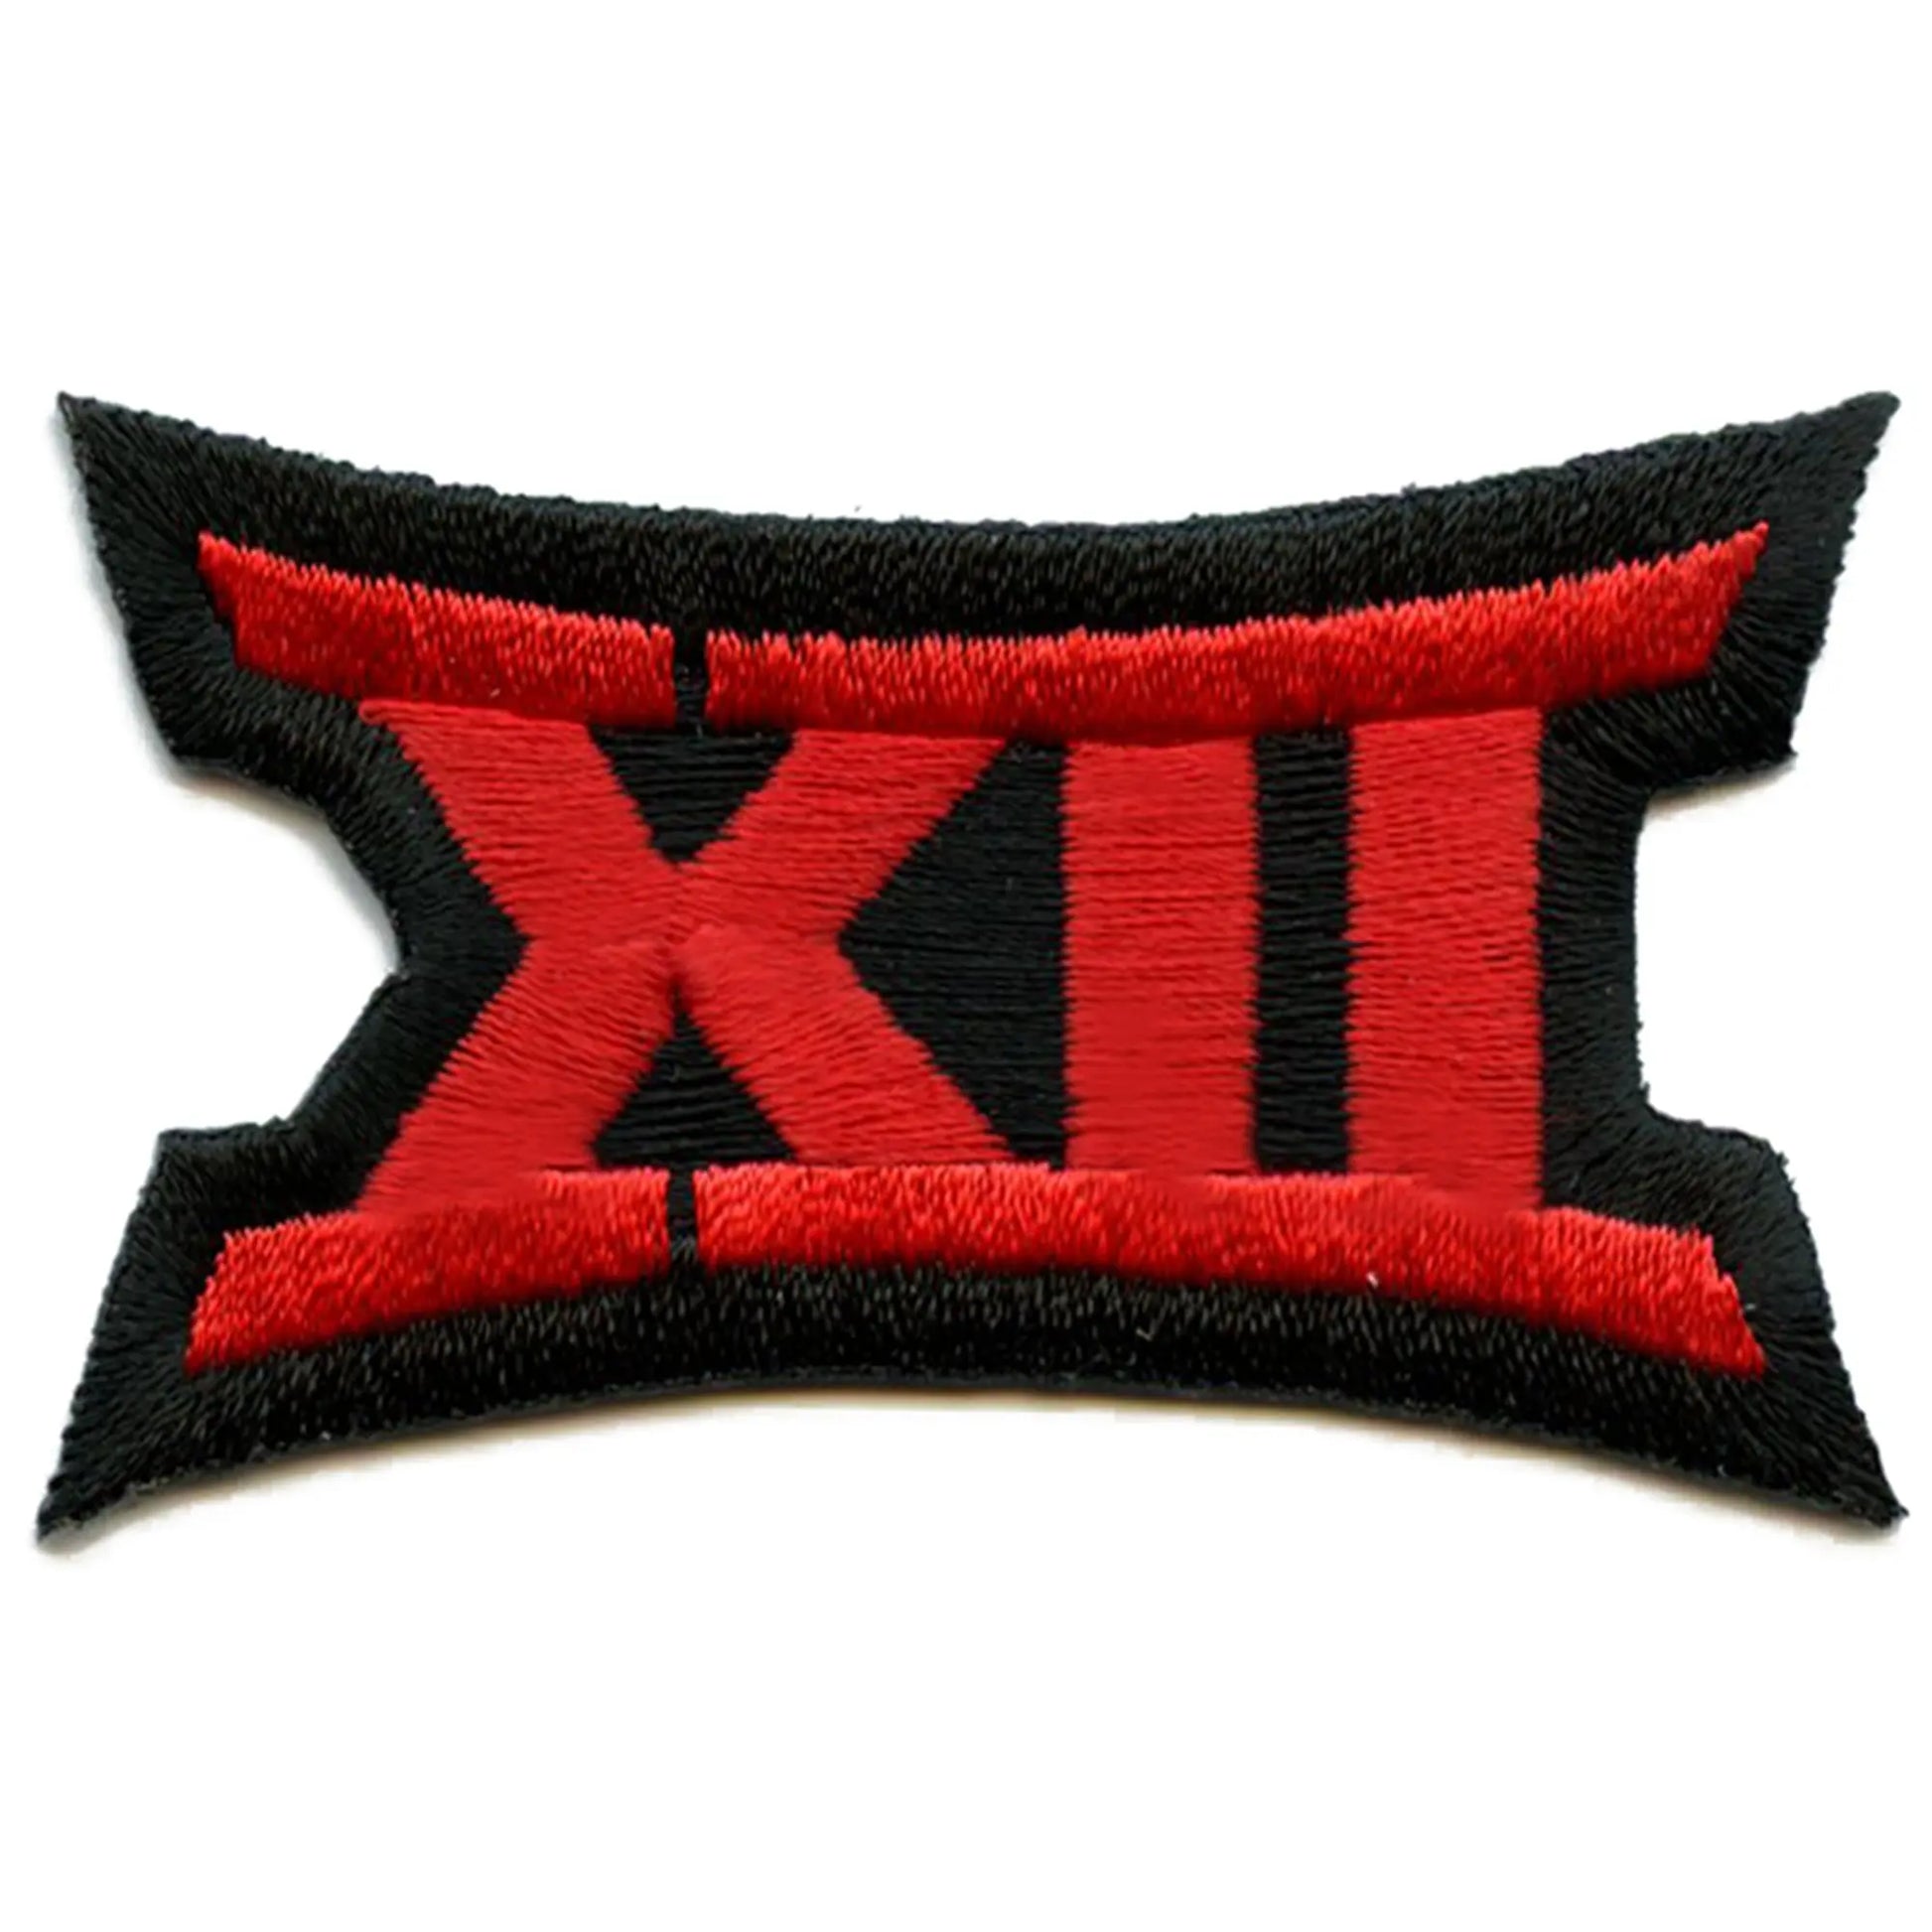 Copy of Big 12 XII Conference Team Jersey Uniform Patch Cincinnati